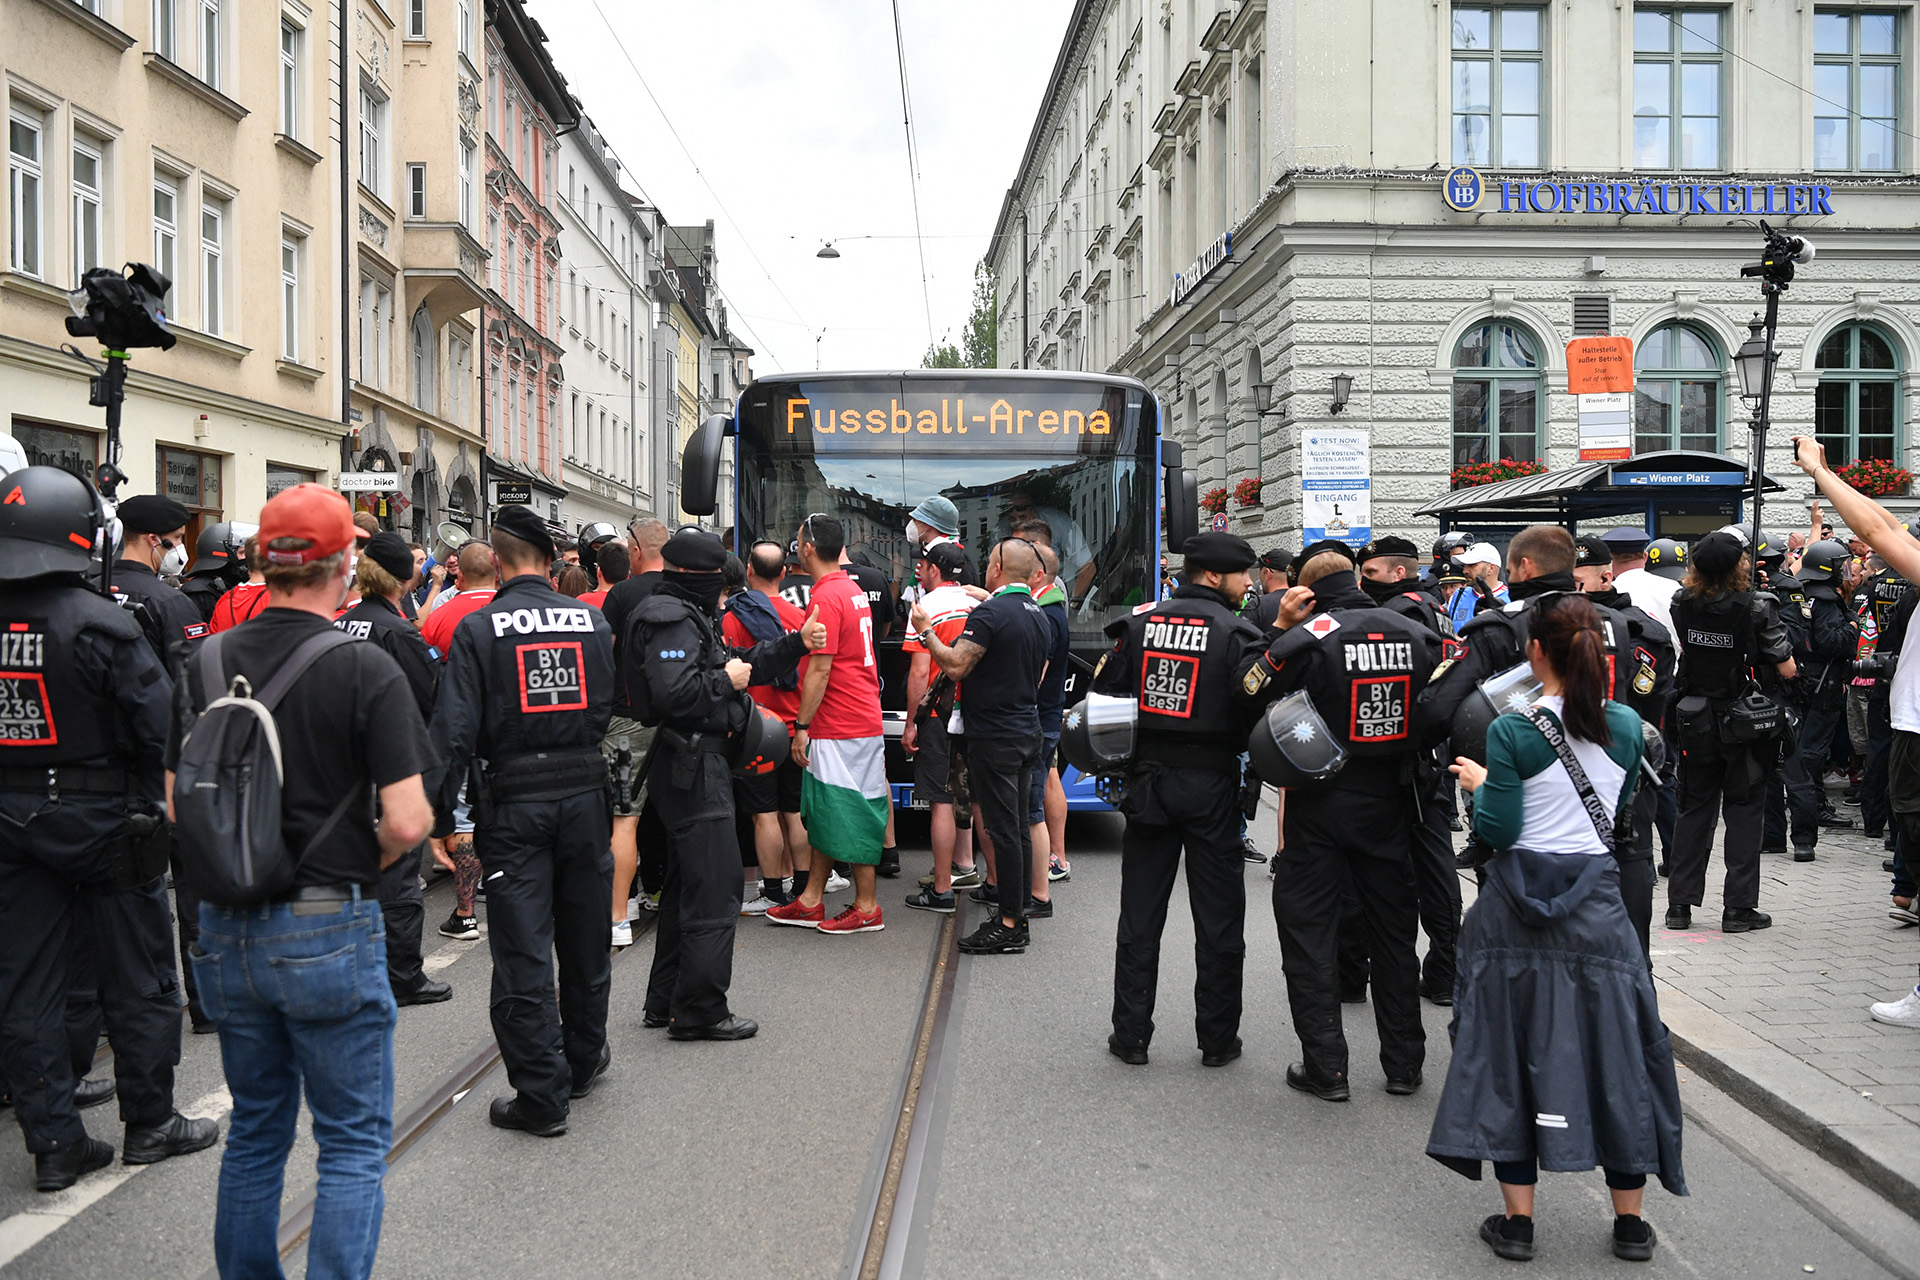 Tizennyolc magyar szurkolót állítottak elő Münchenben, volt akit náci jelképek miatt